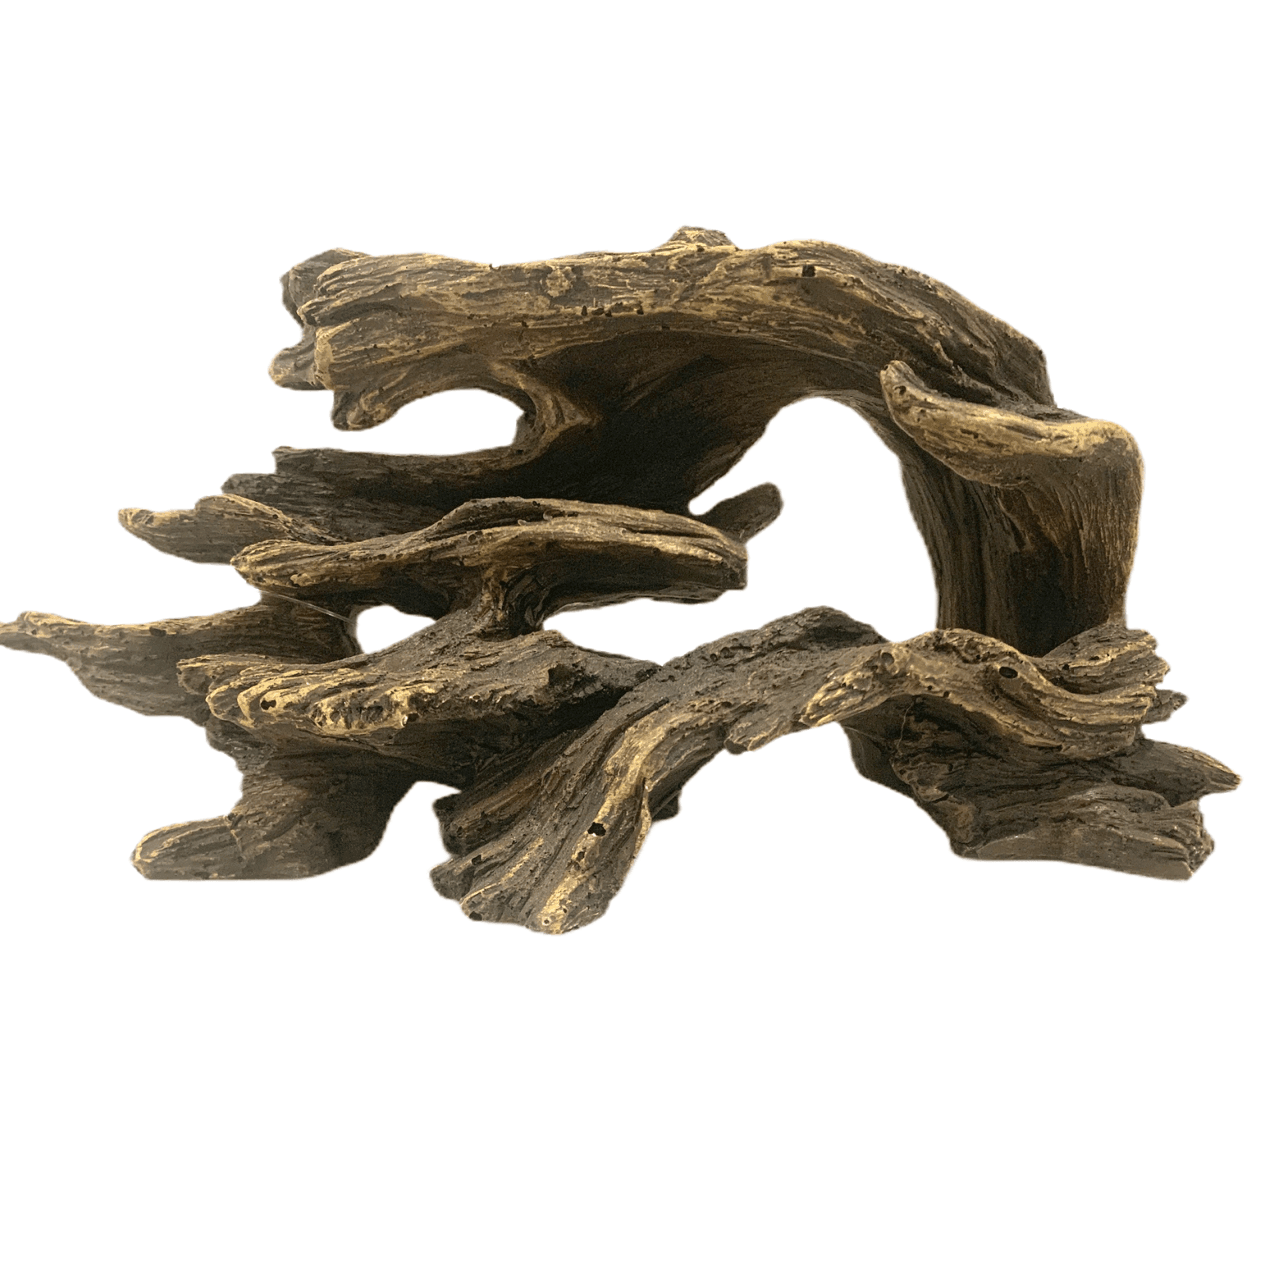 Aquarium Driftwood Ornament 24cm - Amazing Amazon